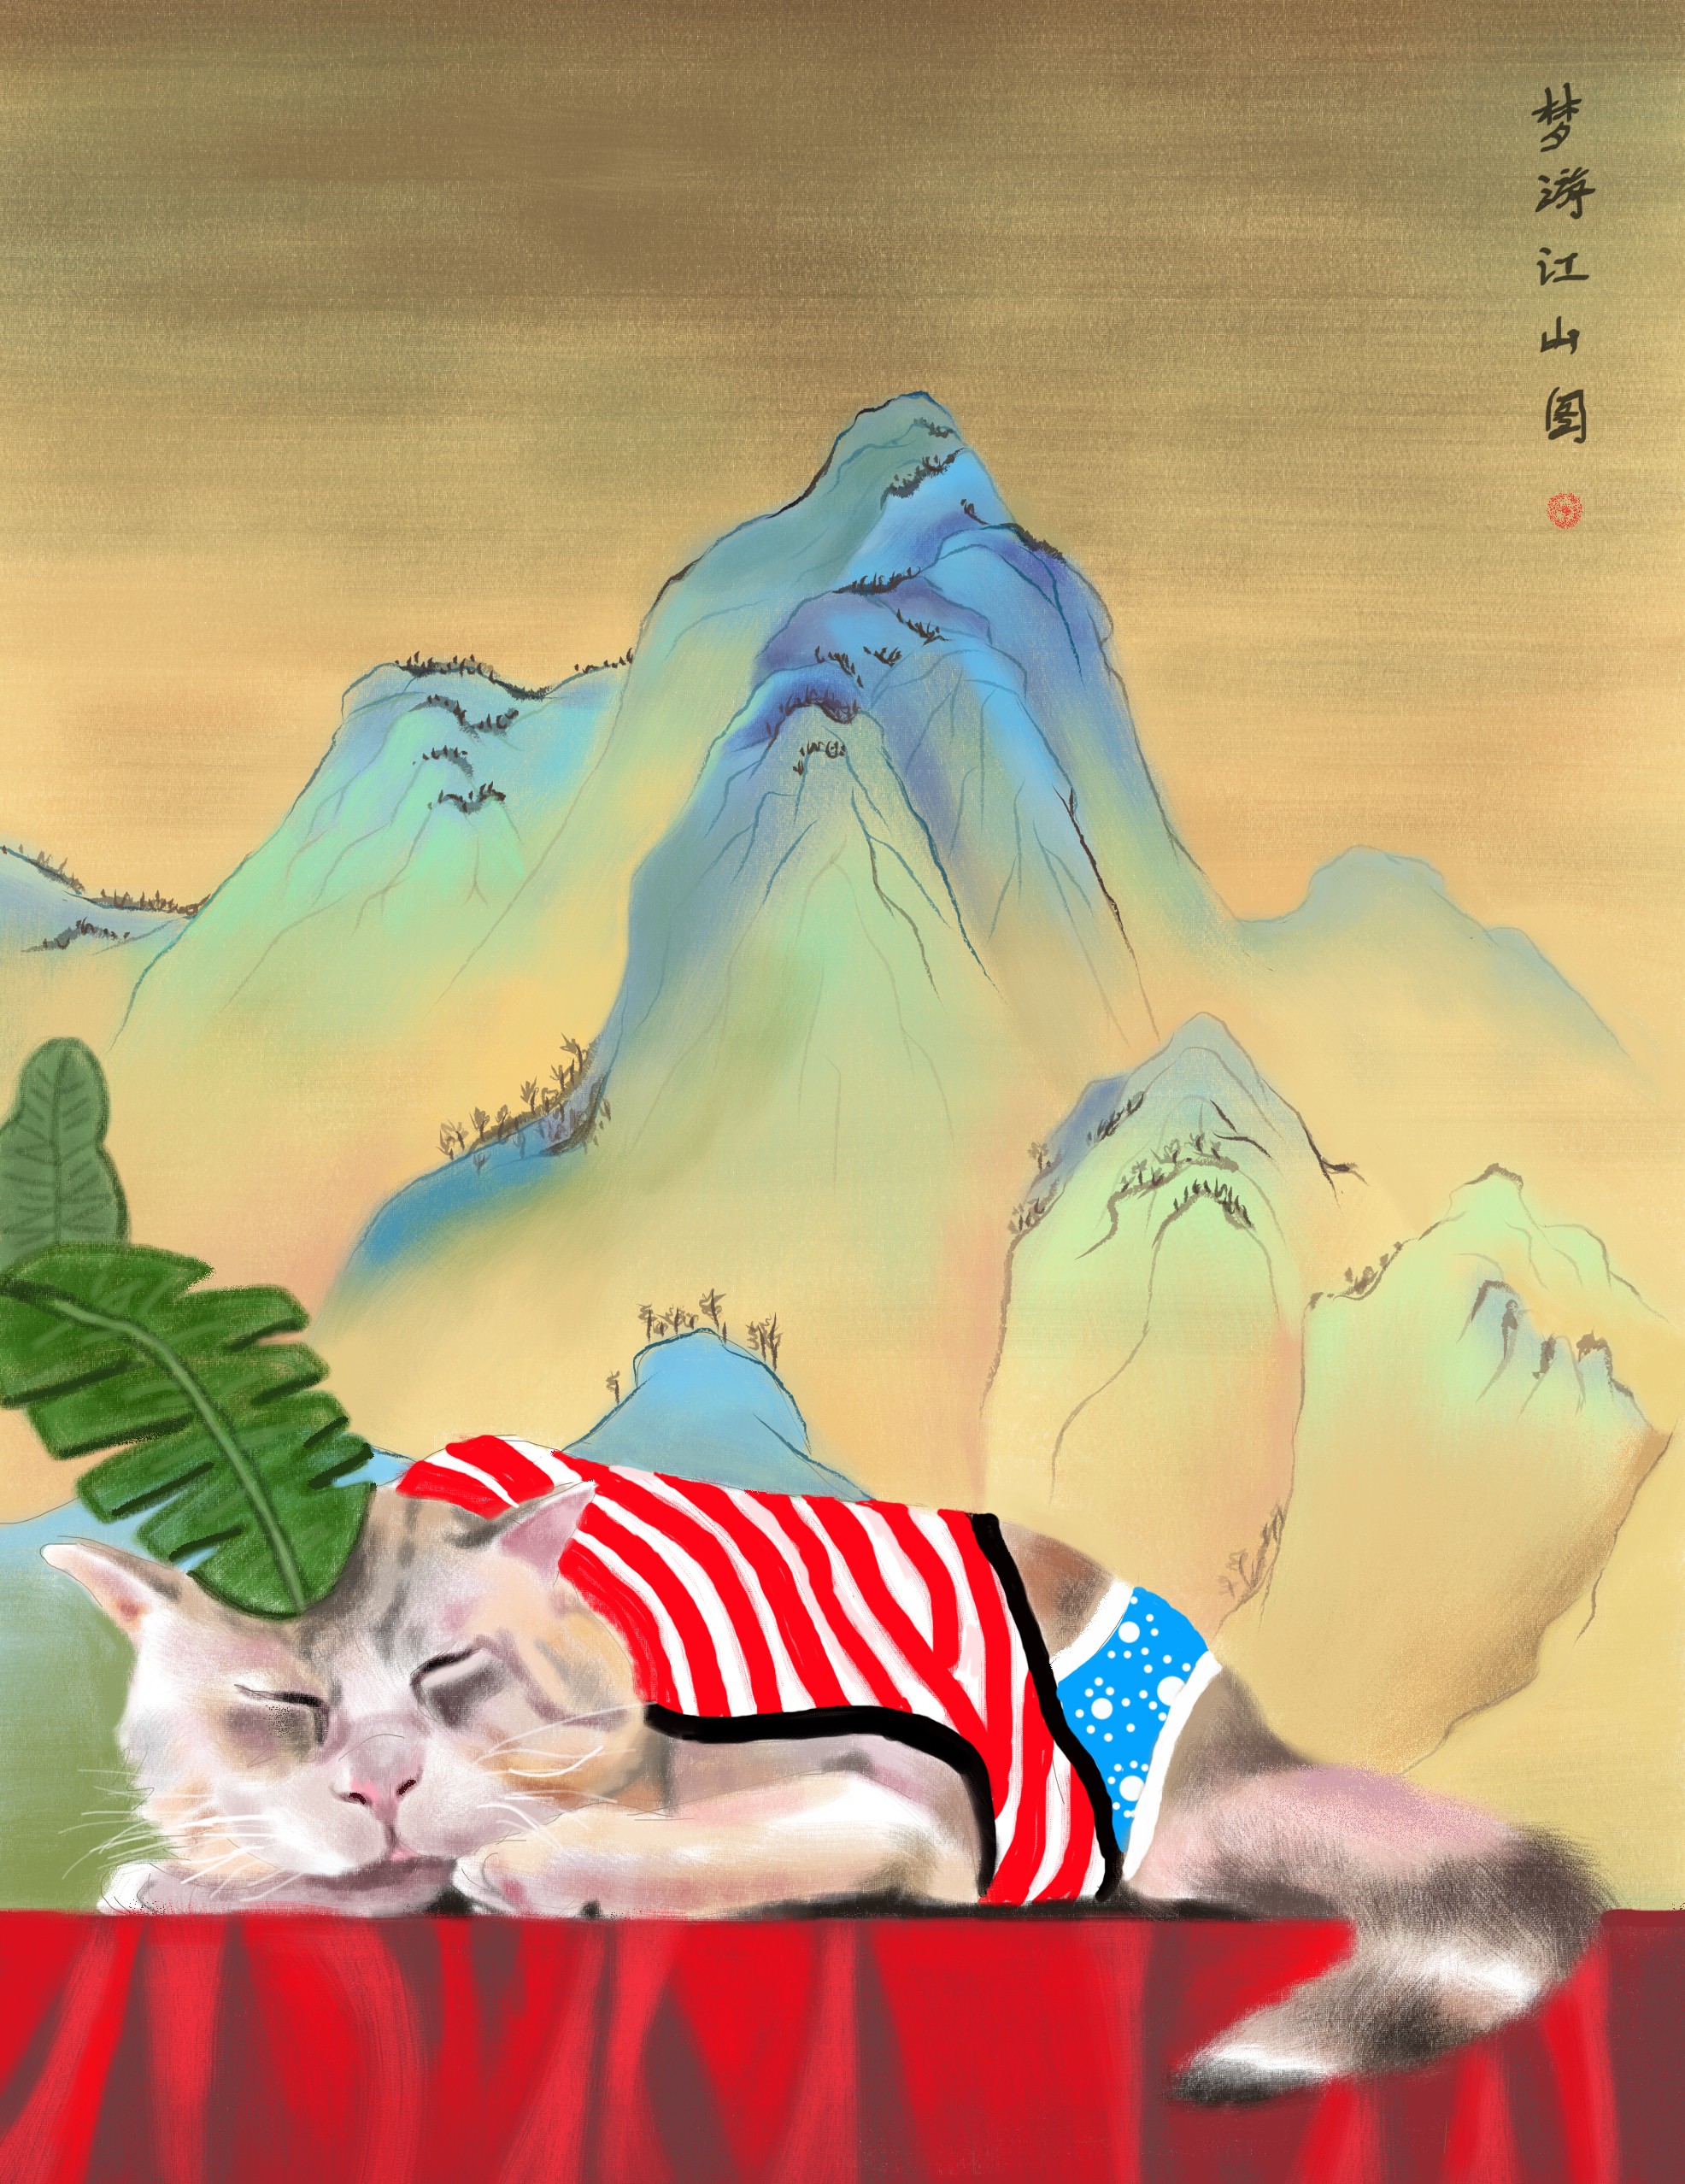 《梦游江山图》-猫动物插画